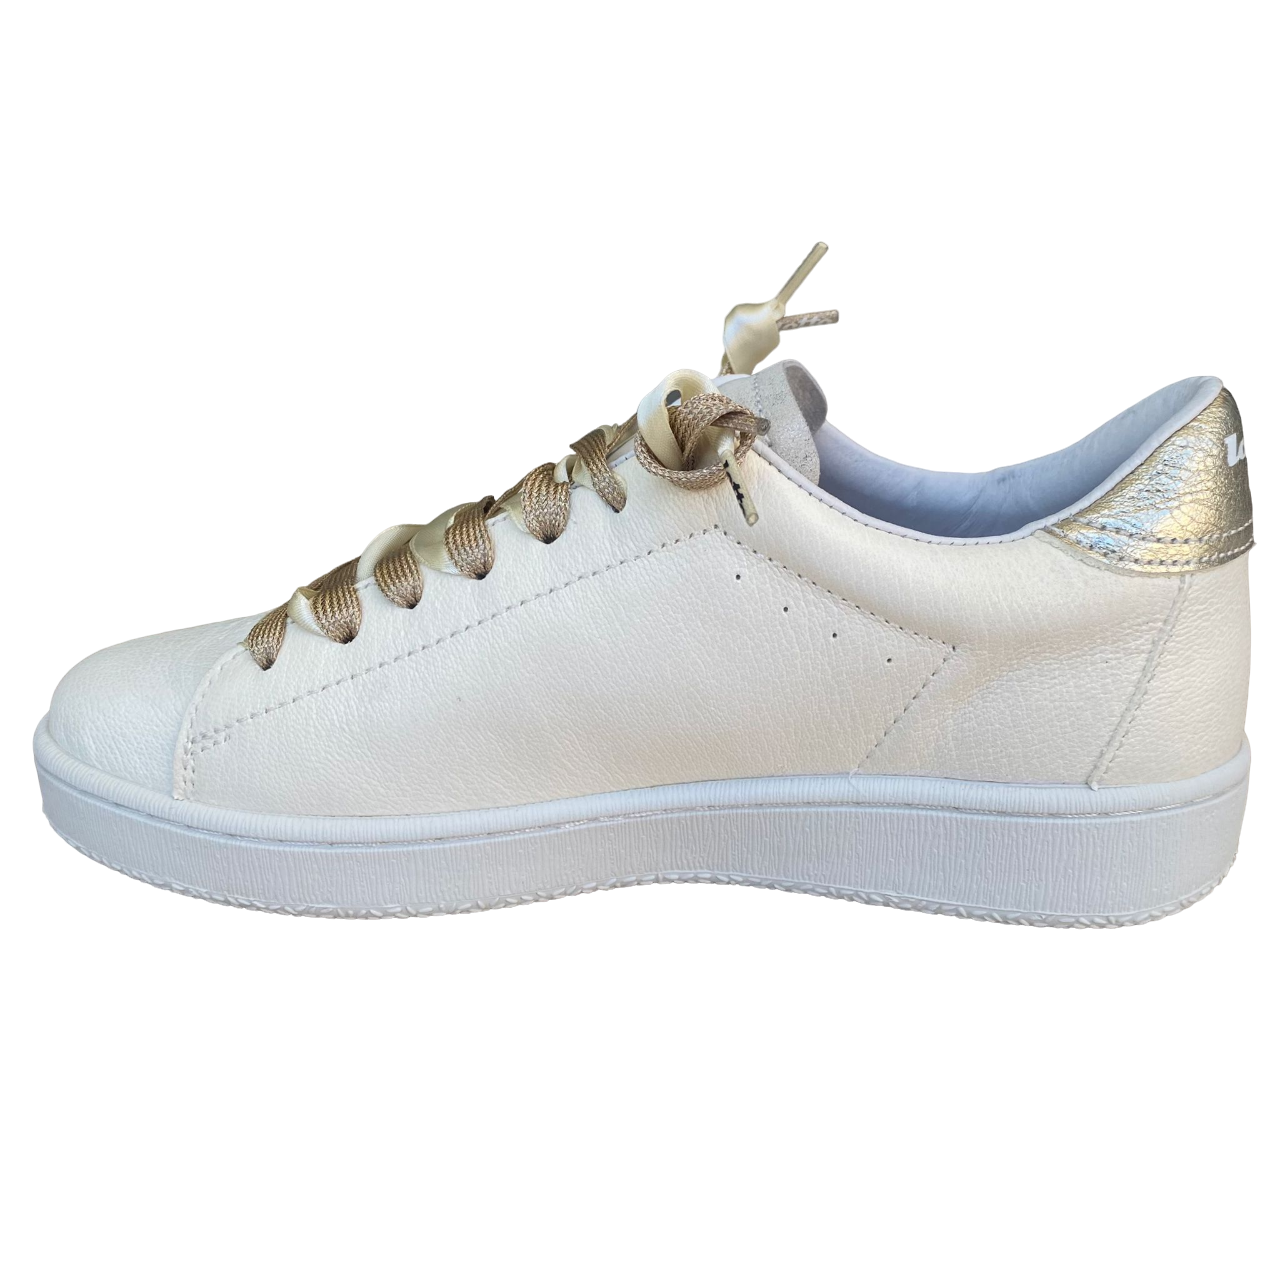 Lotto Leggenda scarpa sneakers da donna Autograph Pearl 221130 61I bianco antico-mandorla dorata